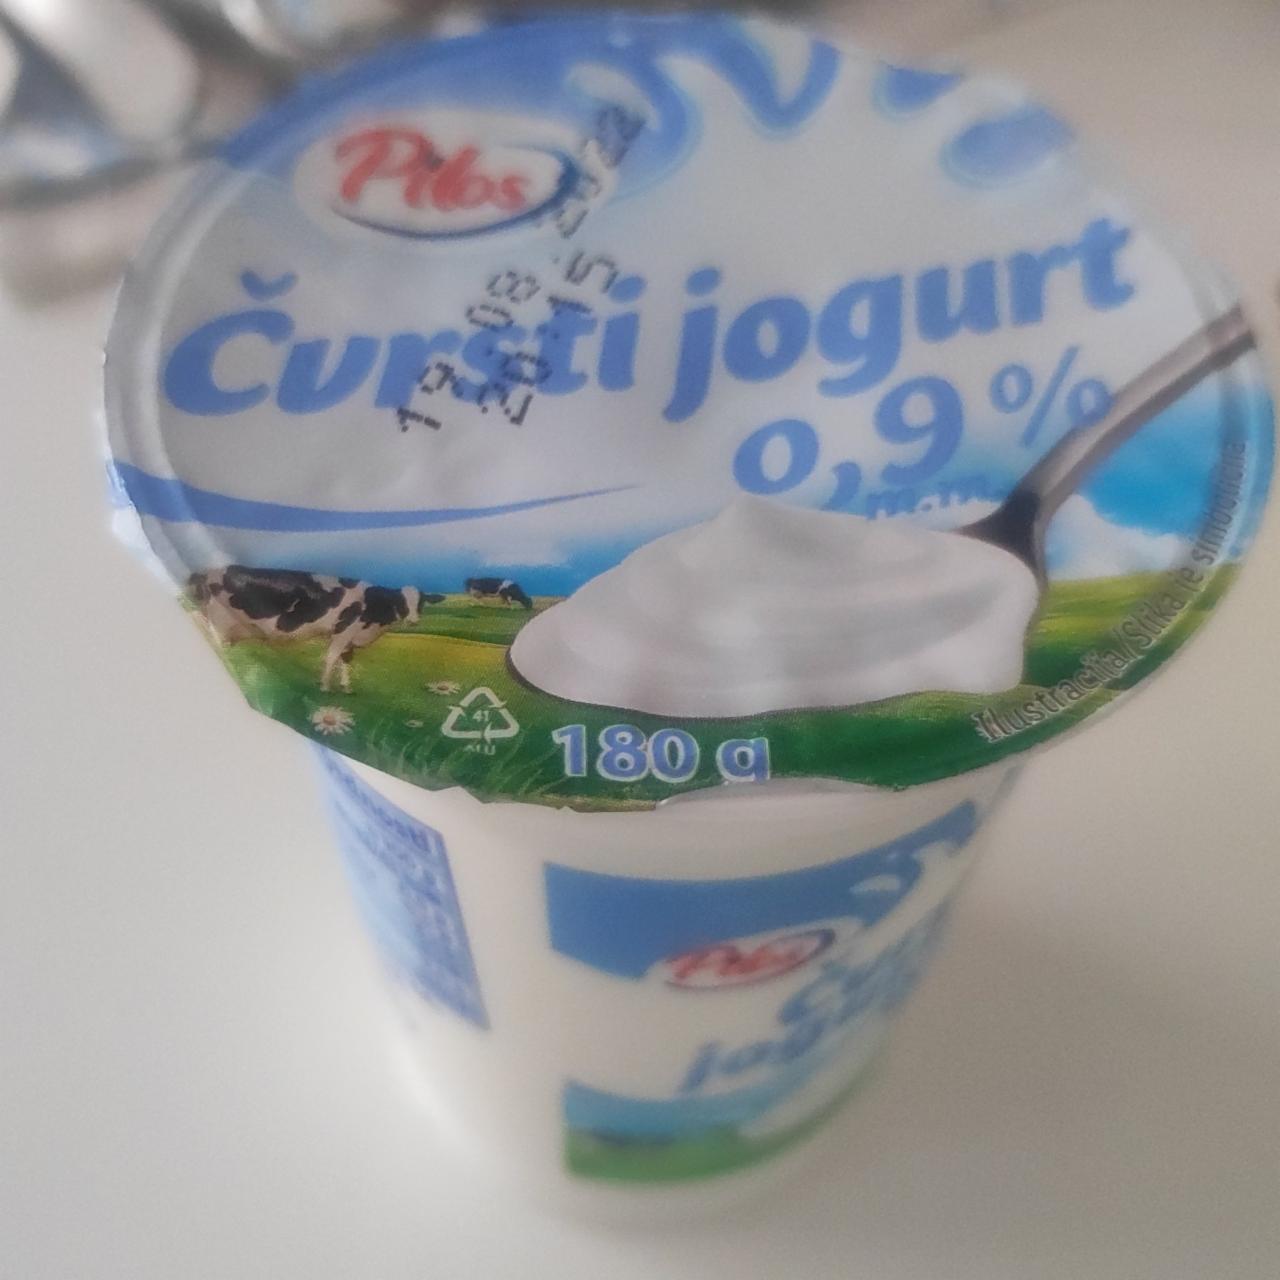 Fotografie - Čvrstí jogurt 0,9% Pilos